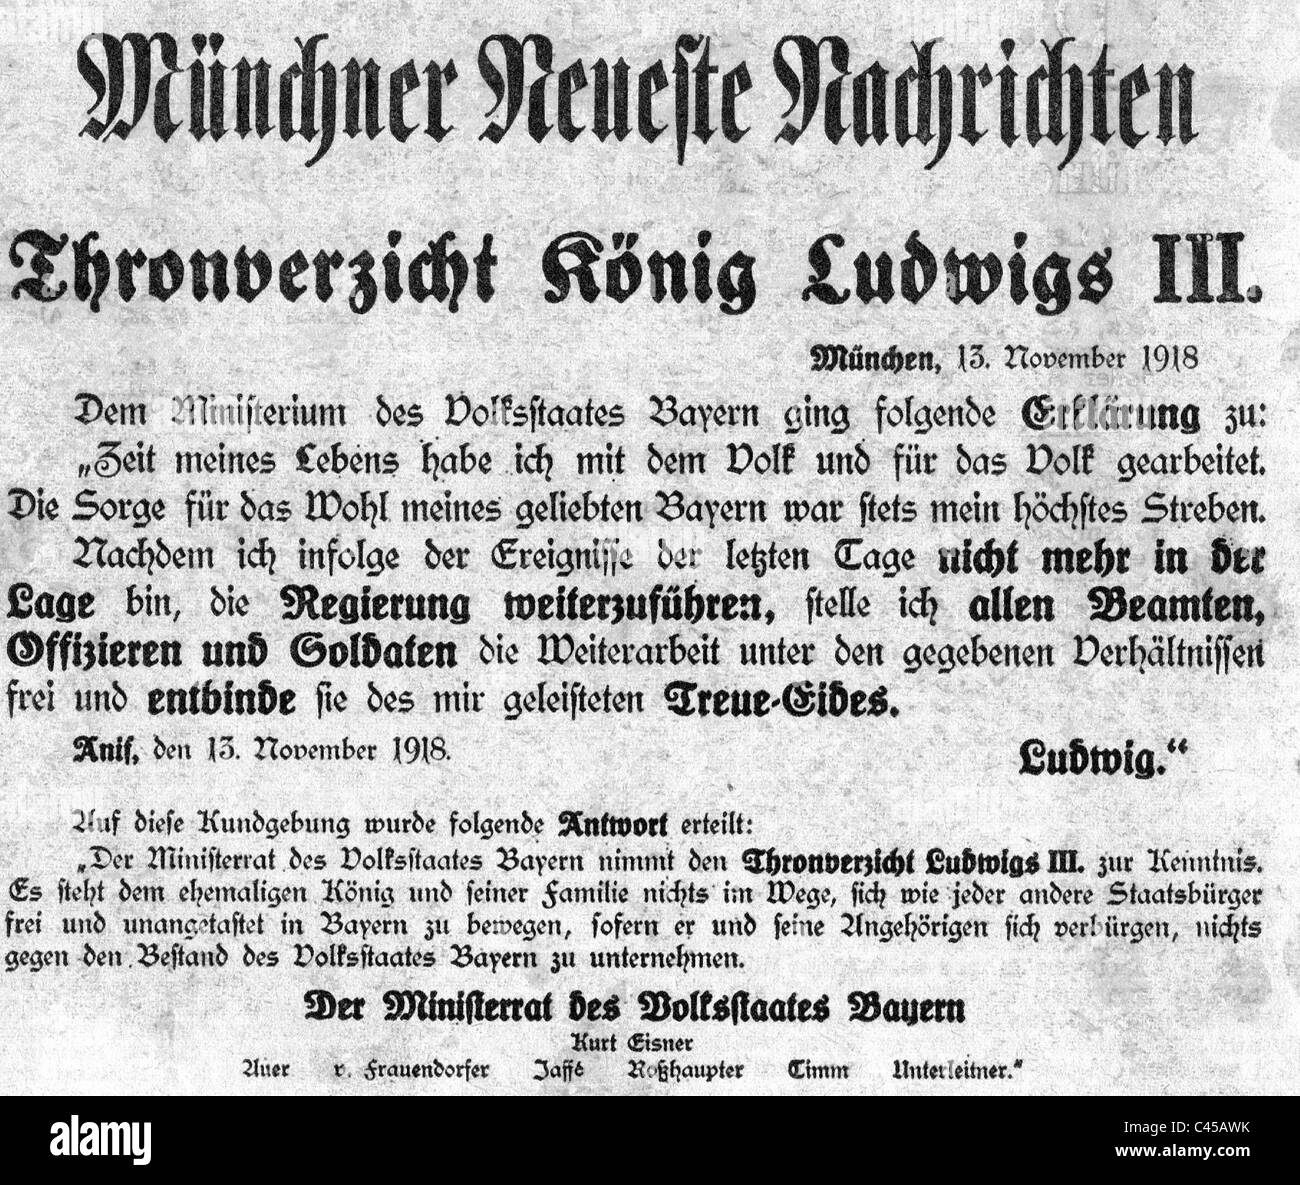 Abdication of King Ludwig III, 1918 Stock Photo